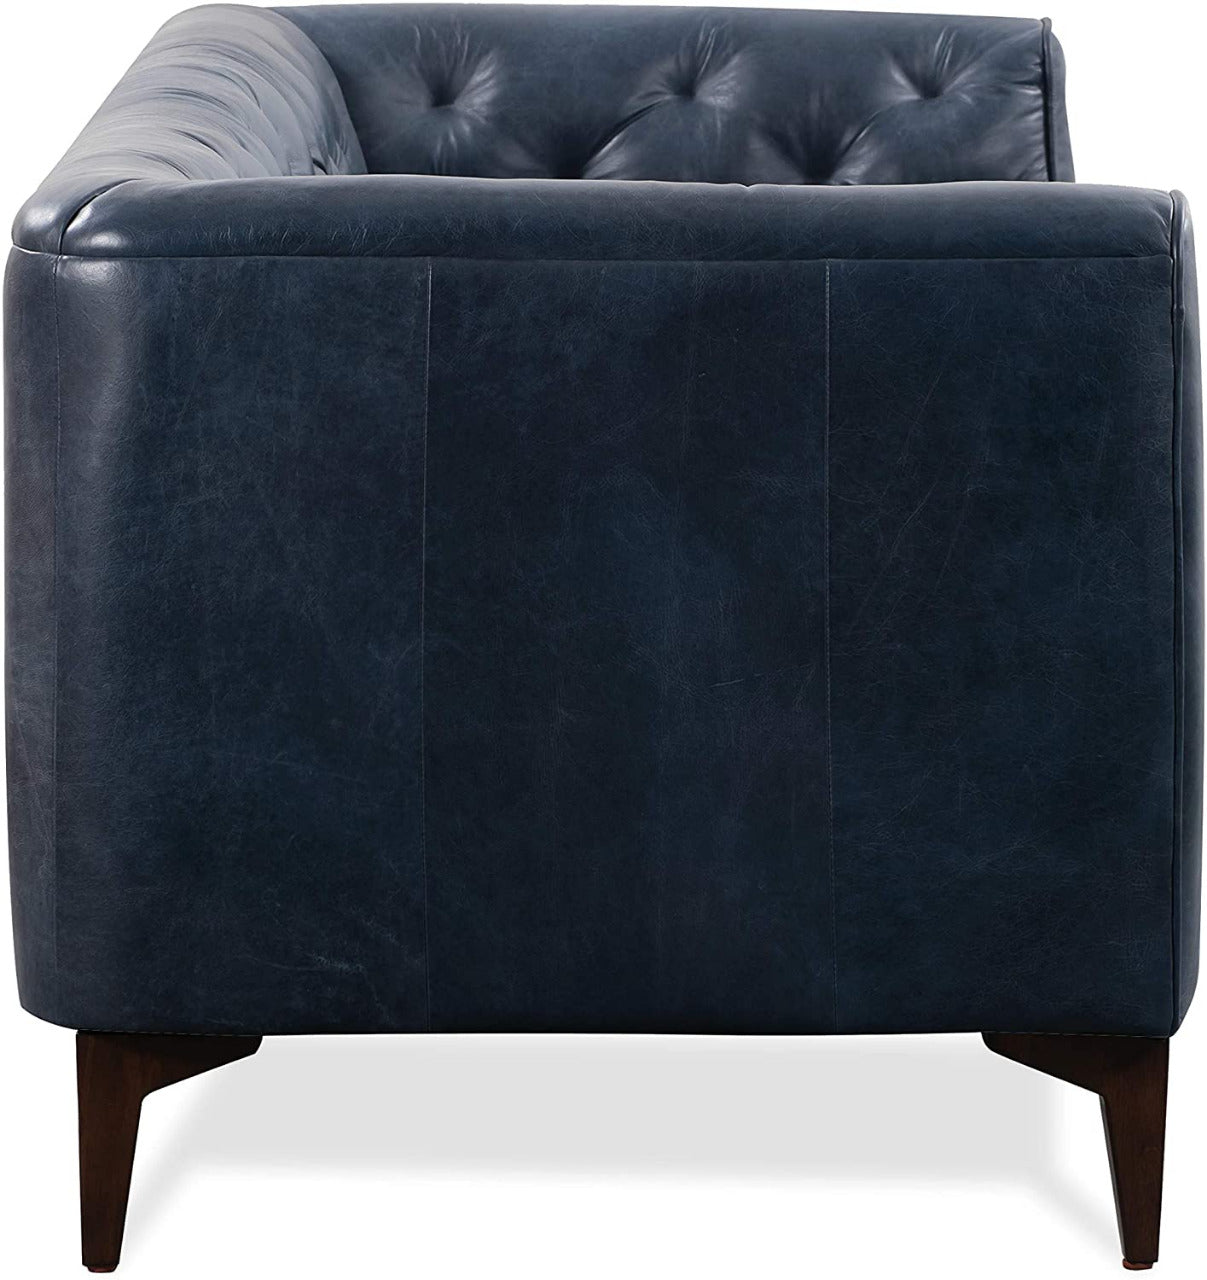 3 Seater Sofa : Leatherette Sofa Set